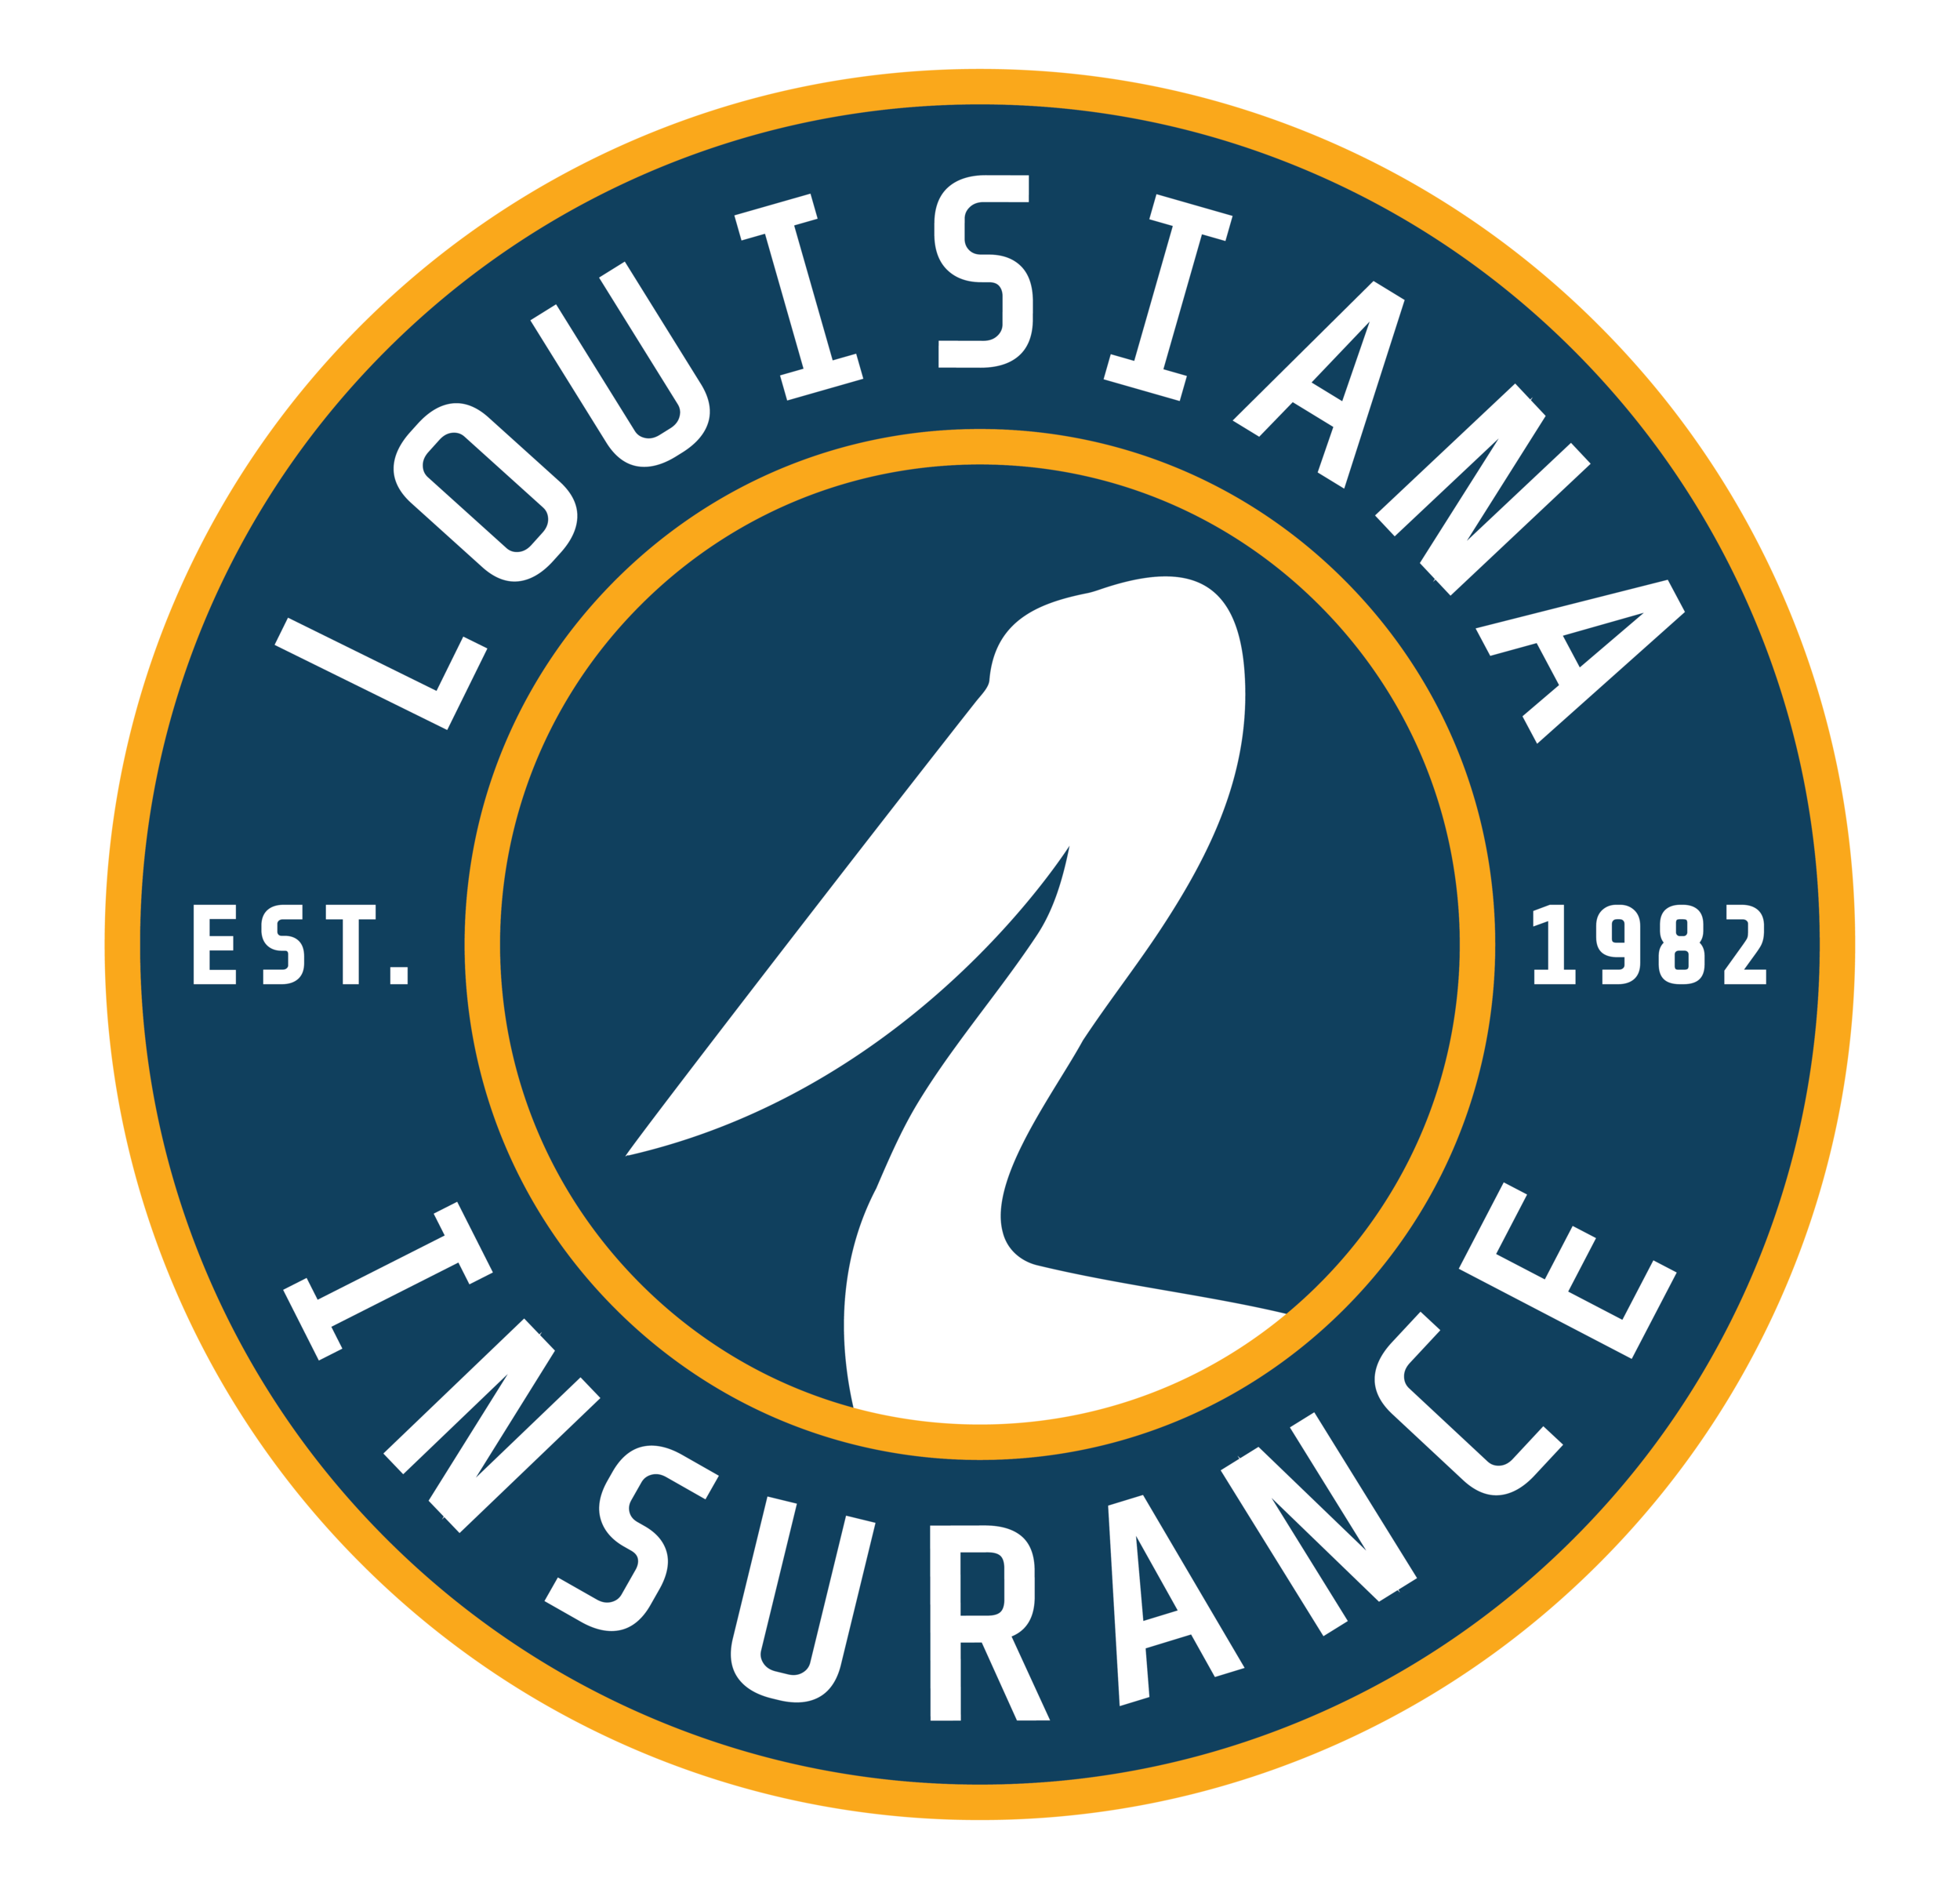 Louisiana Insurance Services